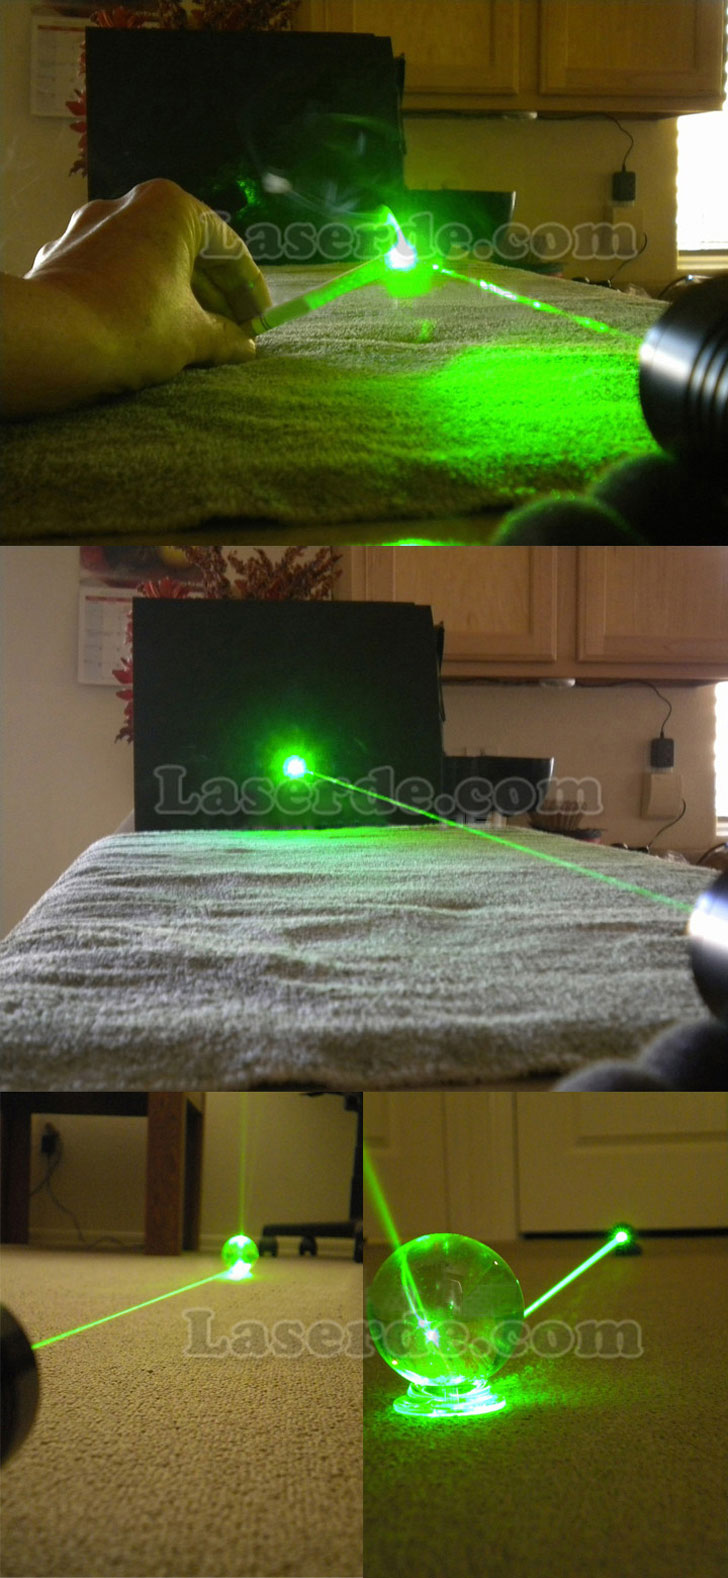 grner laserpointer 1000mw